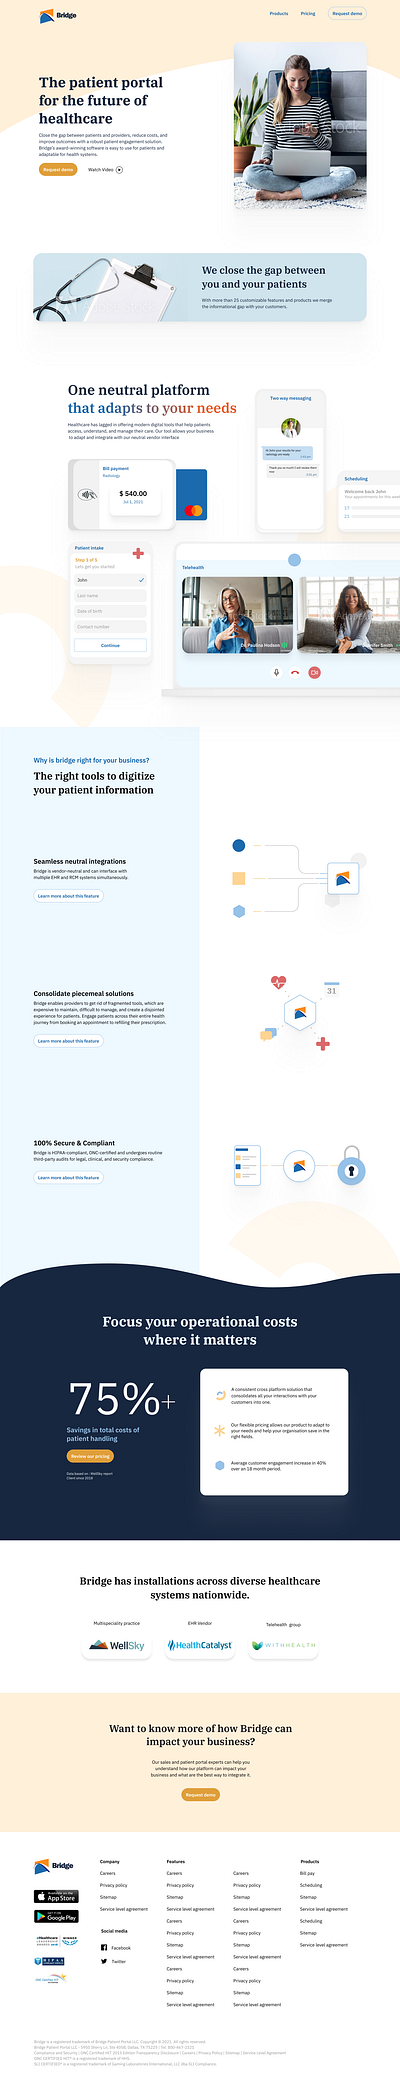 Bridge Interact . io / Website Redesign design system figma illustration interaction design redesign ui ux web design